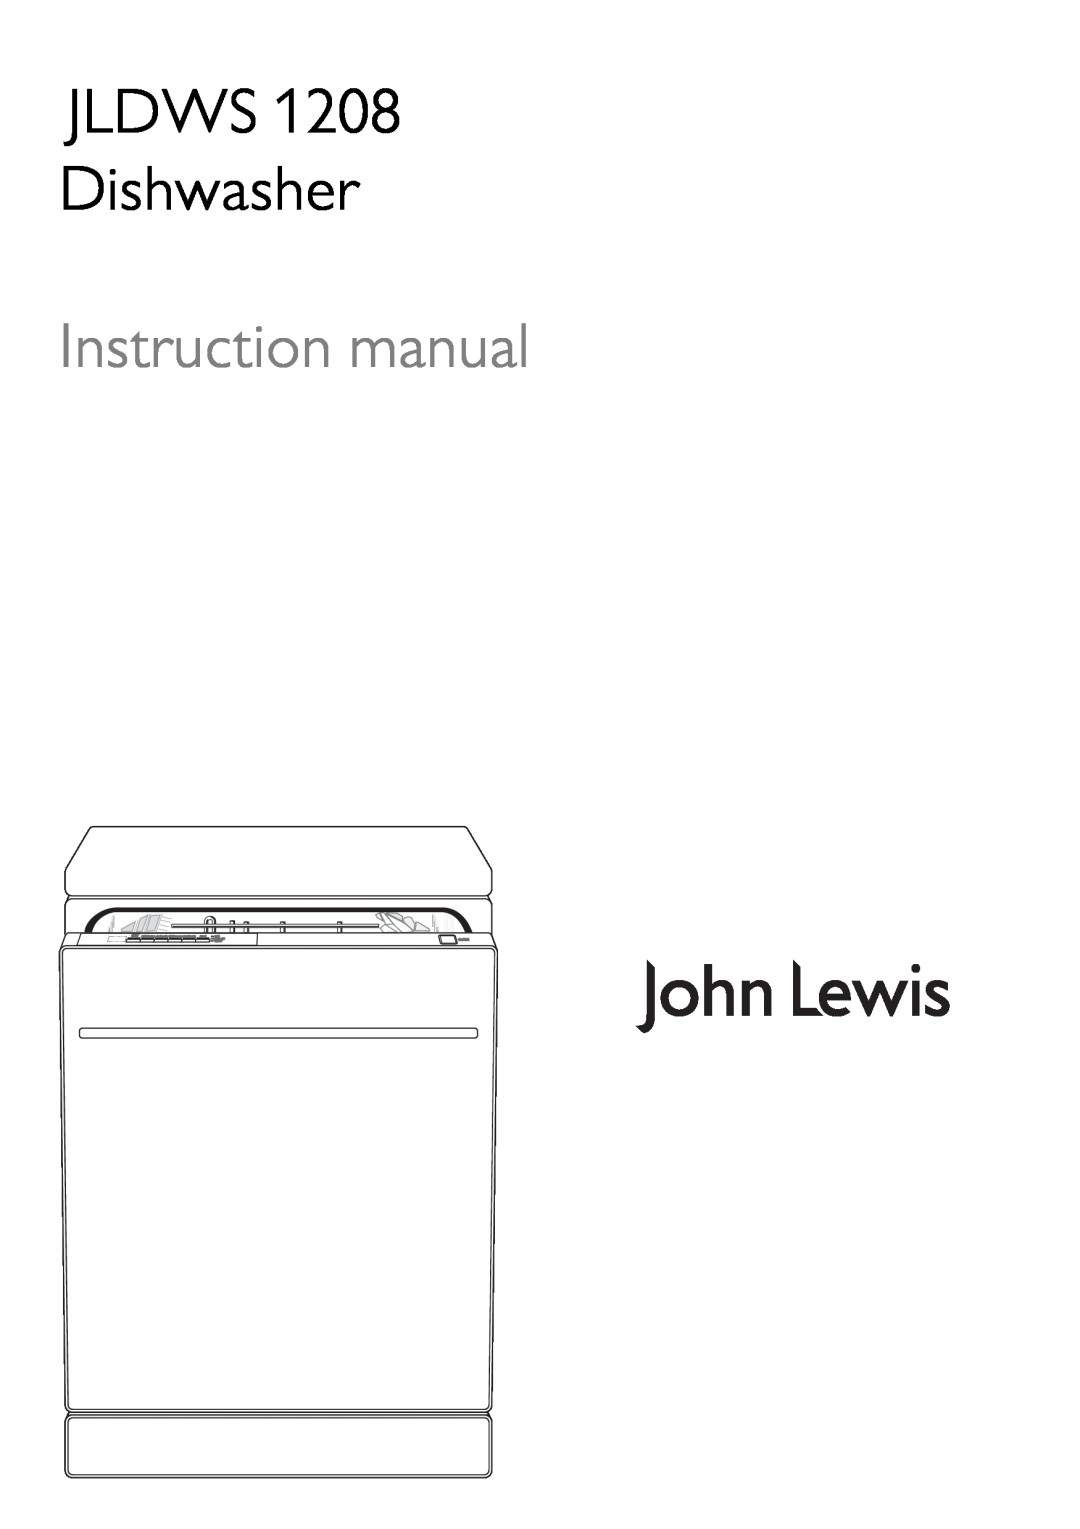 John Lewis JLDWS1208 instruction manual JLDWS Dishwasher 